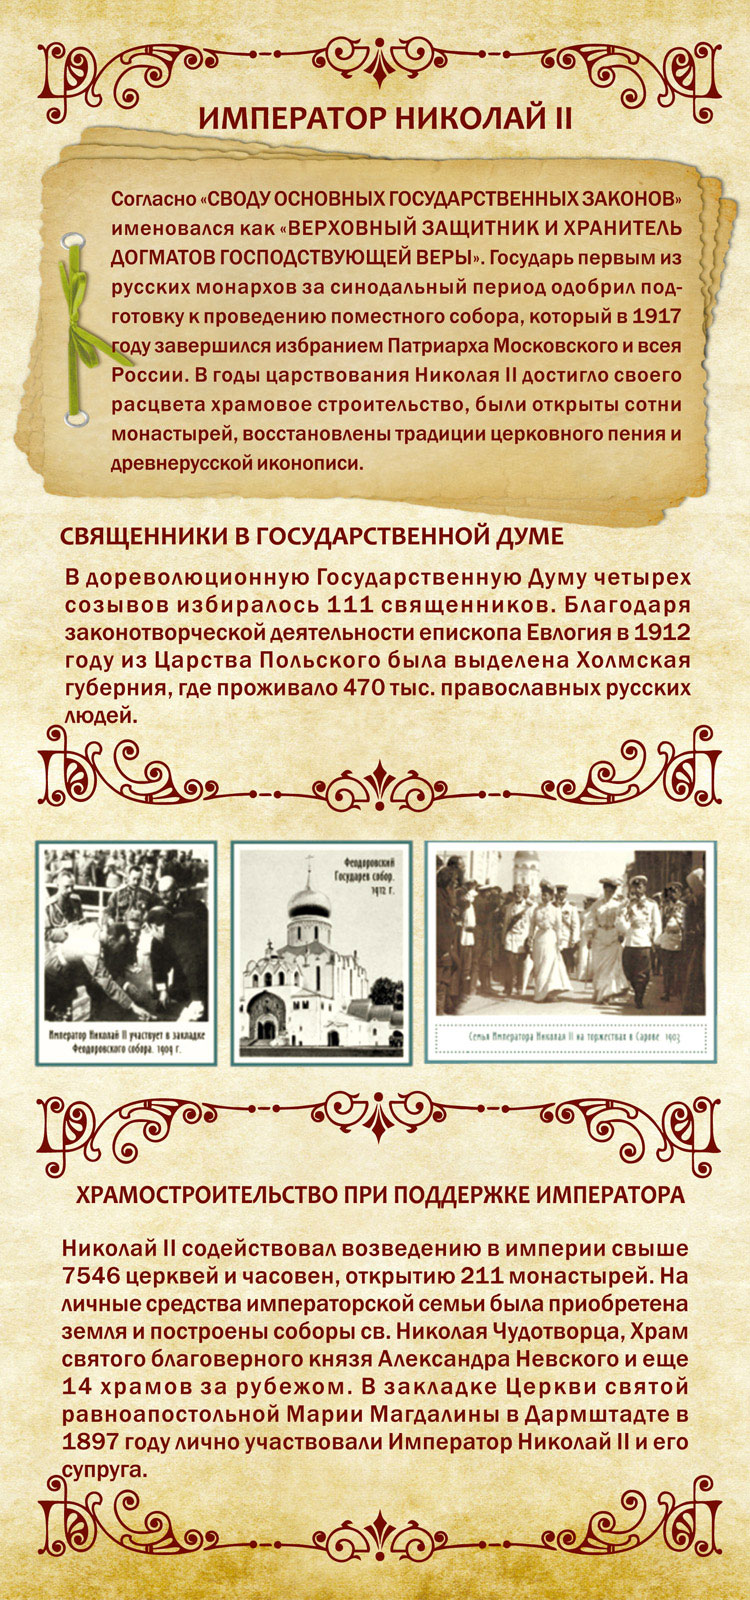 Храмостроительство и реформы церкви при Николае II